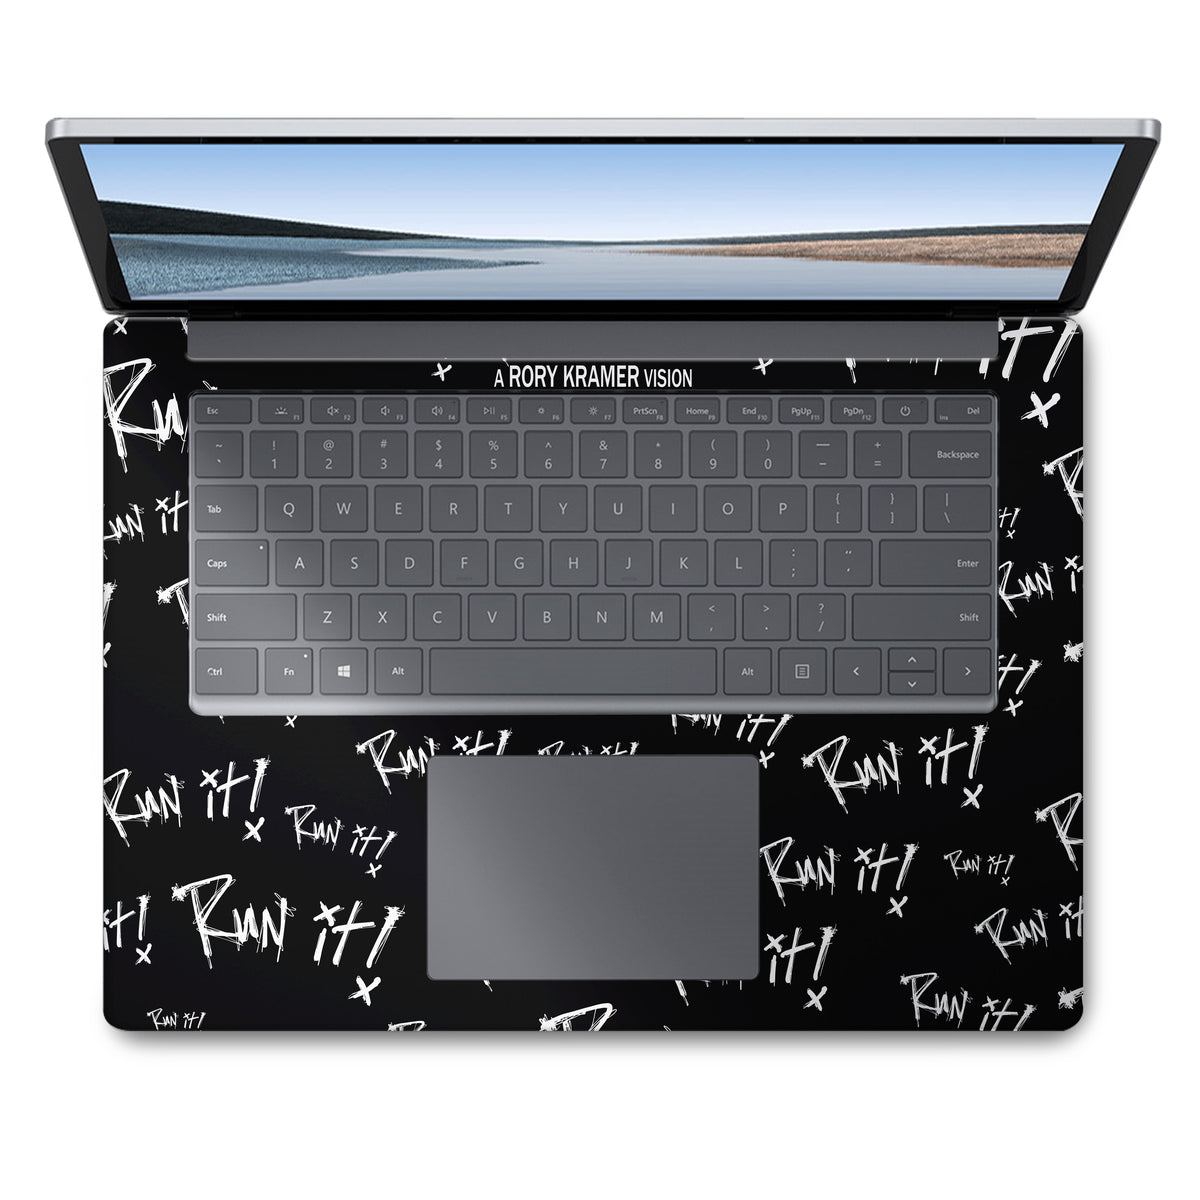 Run It - Black (Surface Laptop Skin)